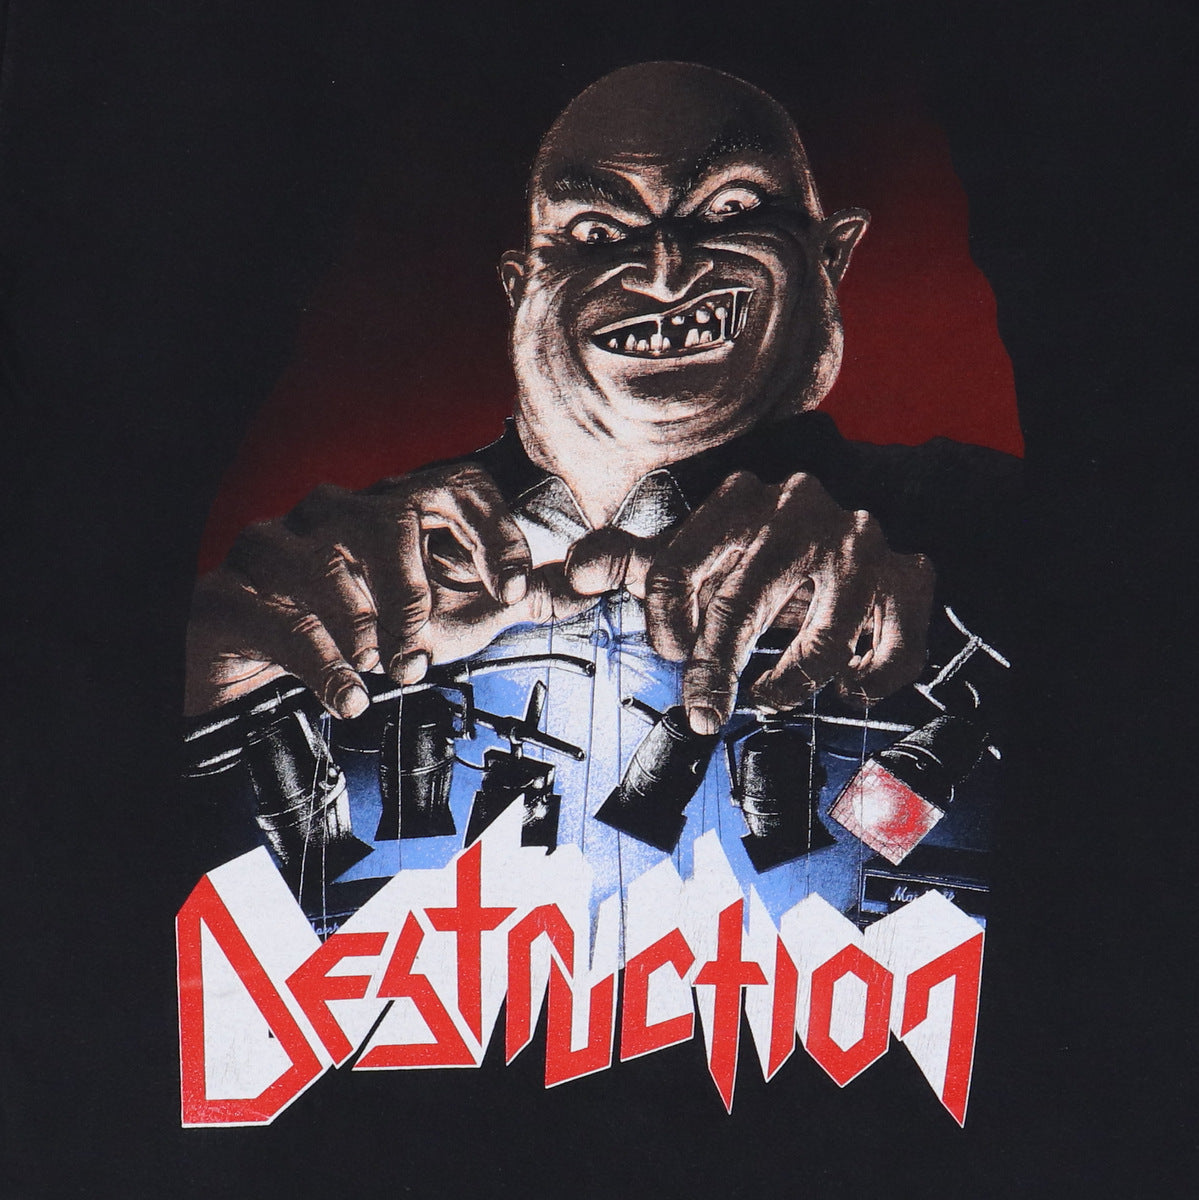 1989 Destruction Live Without Sense Tour Shirt